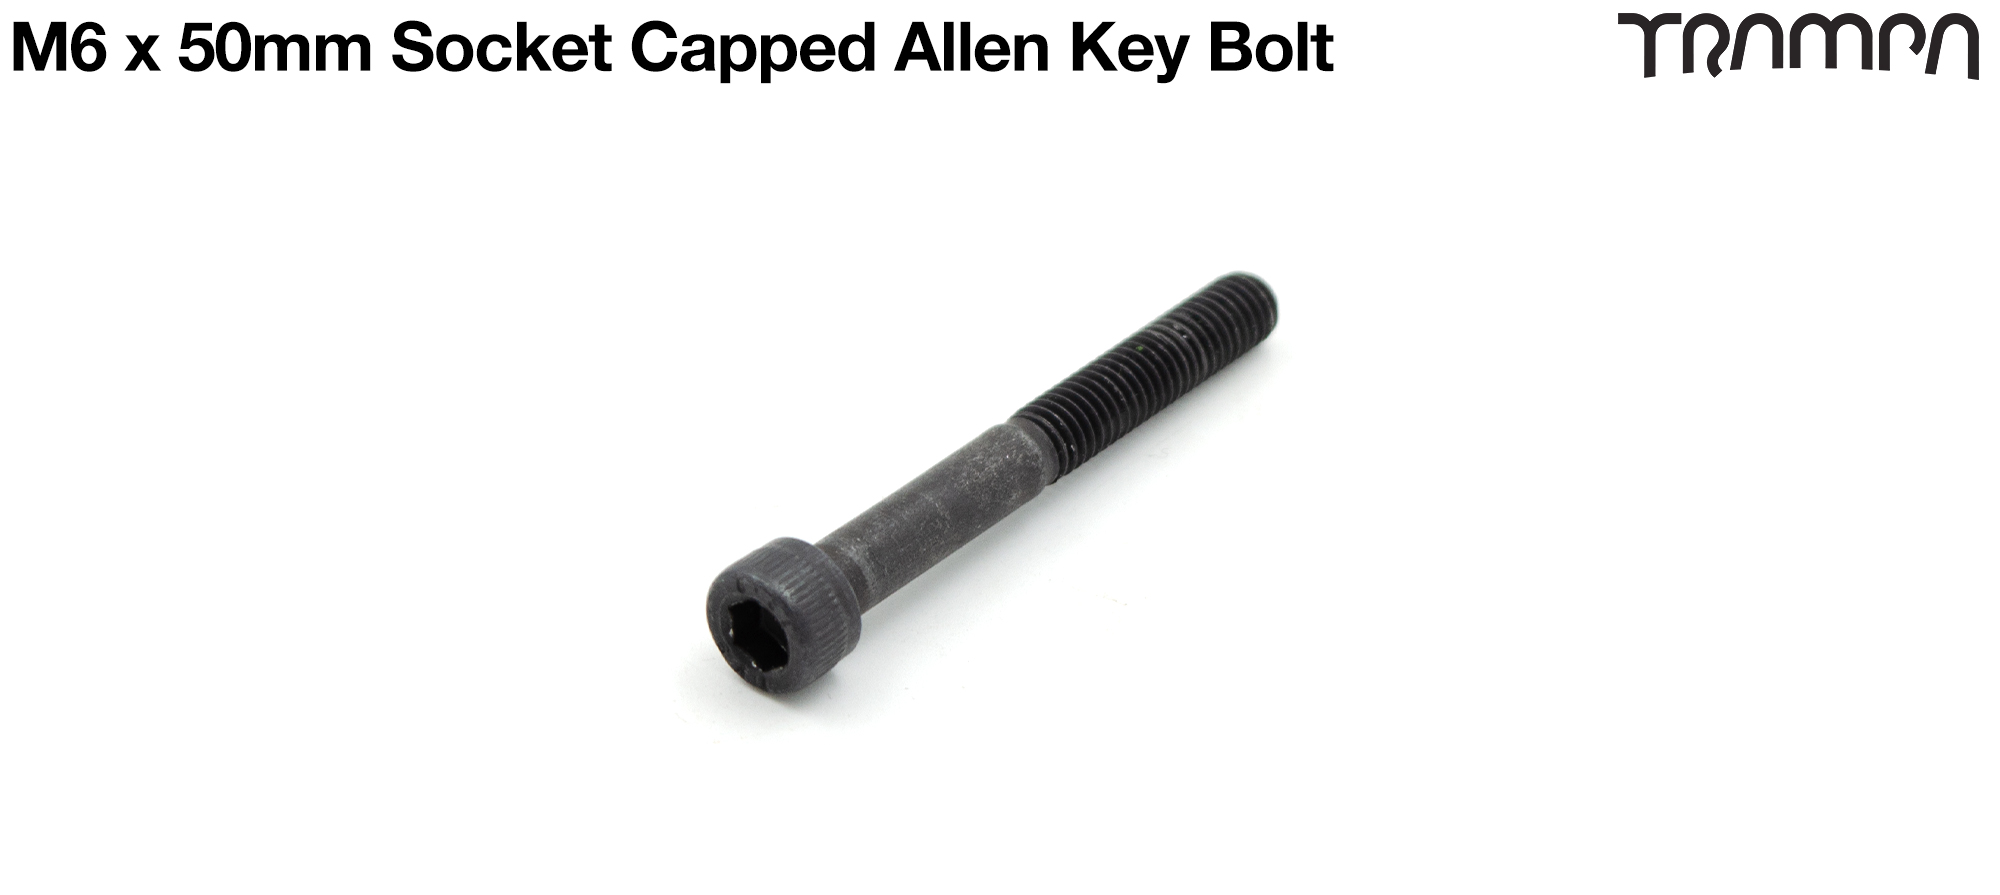 M6 x 50mm Socket Capped Allen-Key Bolt for primo hub - Marine Grade Stainless steel